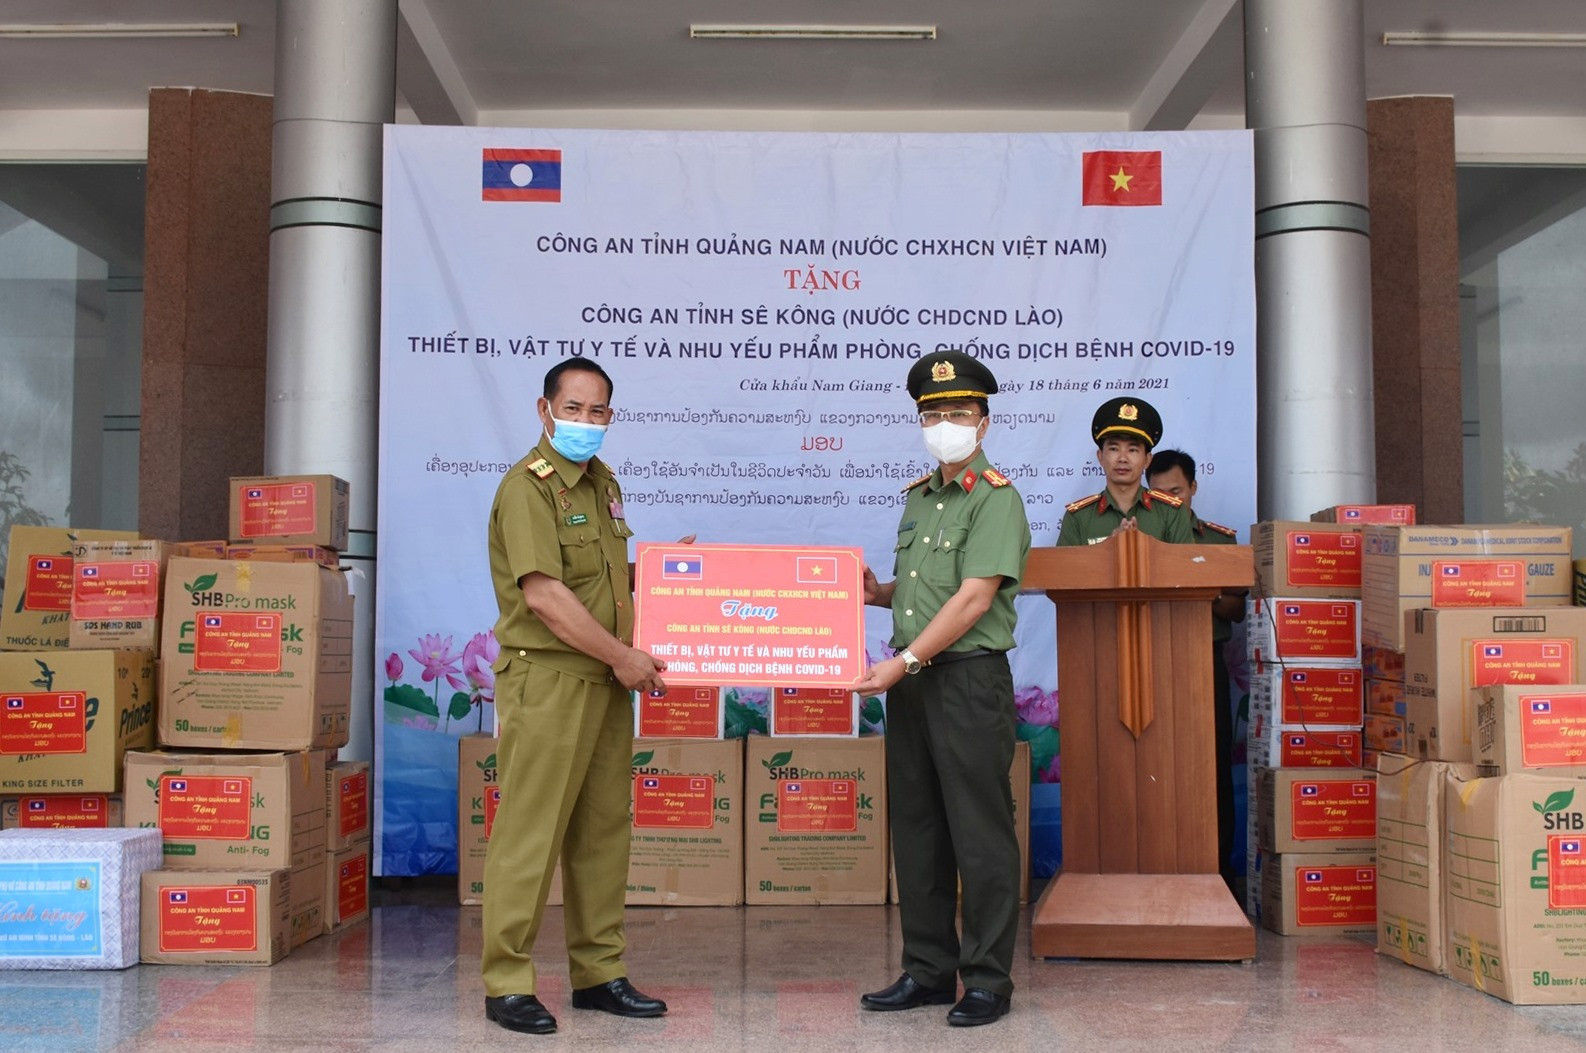 Thượng tá Nguyễn Thành Long tặng trang thiết bị, vật tư y tế phòng chống Covid-19 cho Công an tỉnh Sê Kông. Ảnh: Q.H